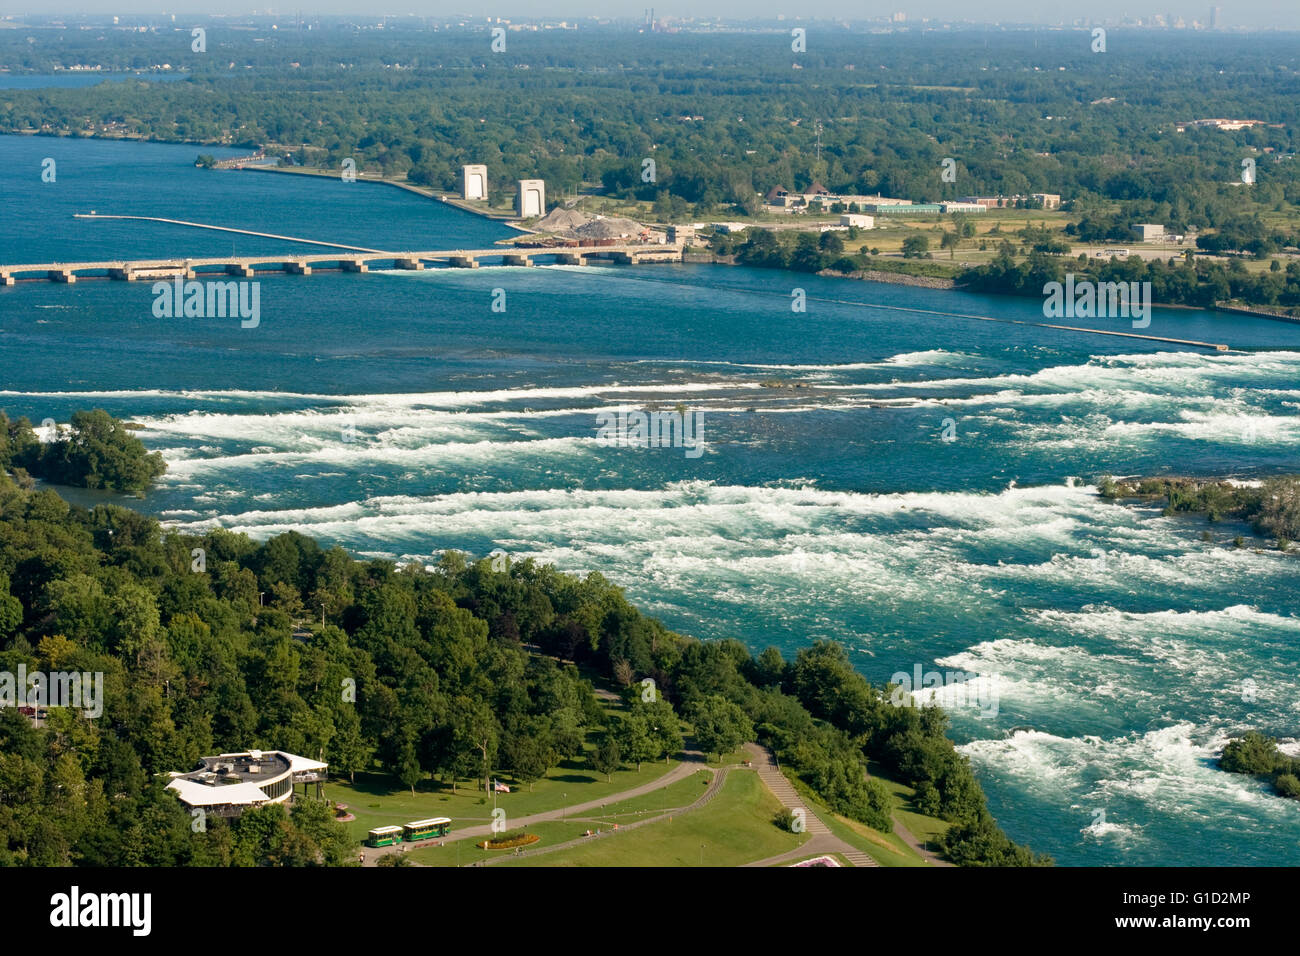 Le barrage de contrôle international sur la rivière Niagara, juste au-dessus des chutes Niagara. Banque D'Images